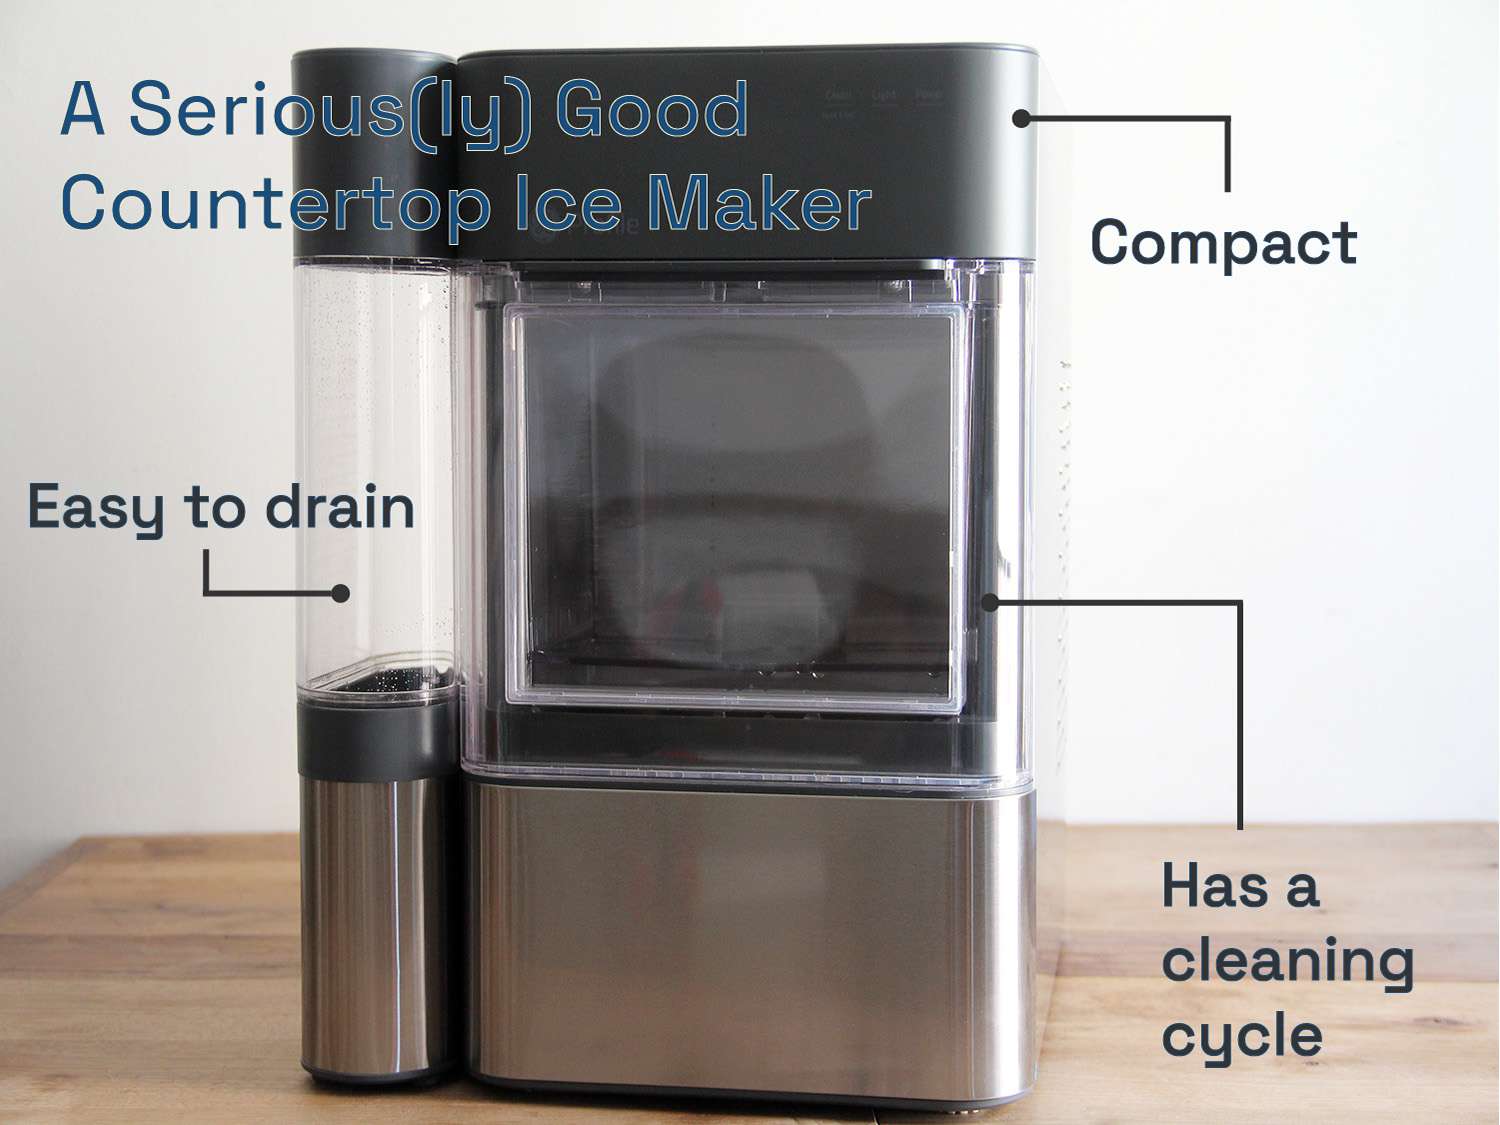 一个非常好的台面制冰机:结构紧凑，易于排水，并且有清洁周期